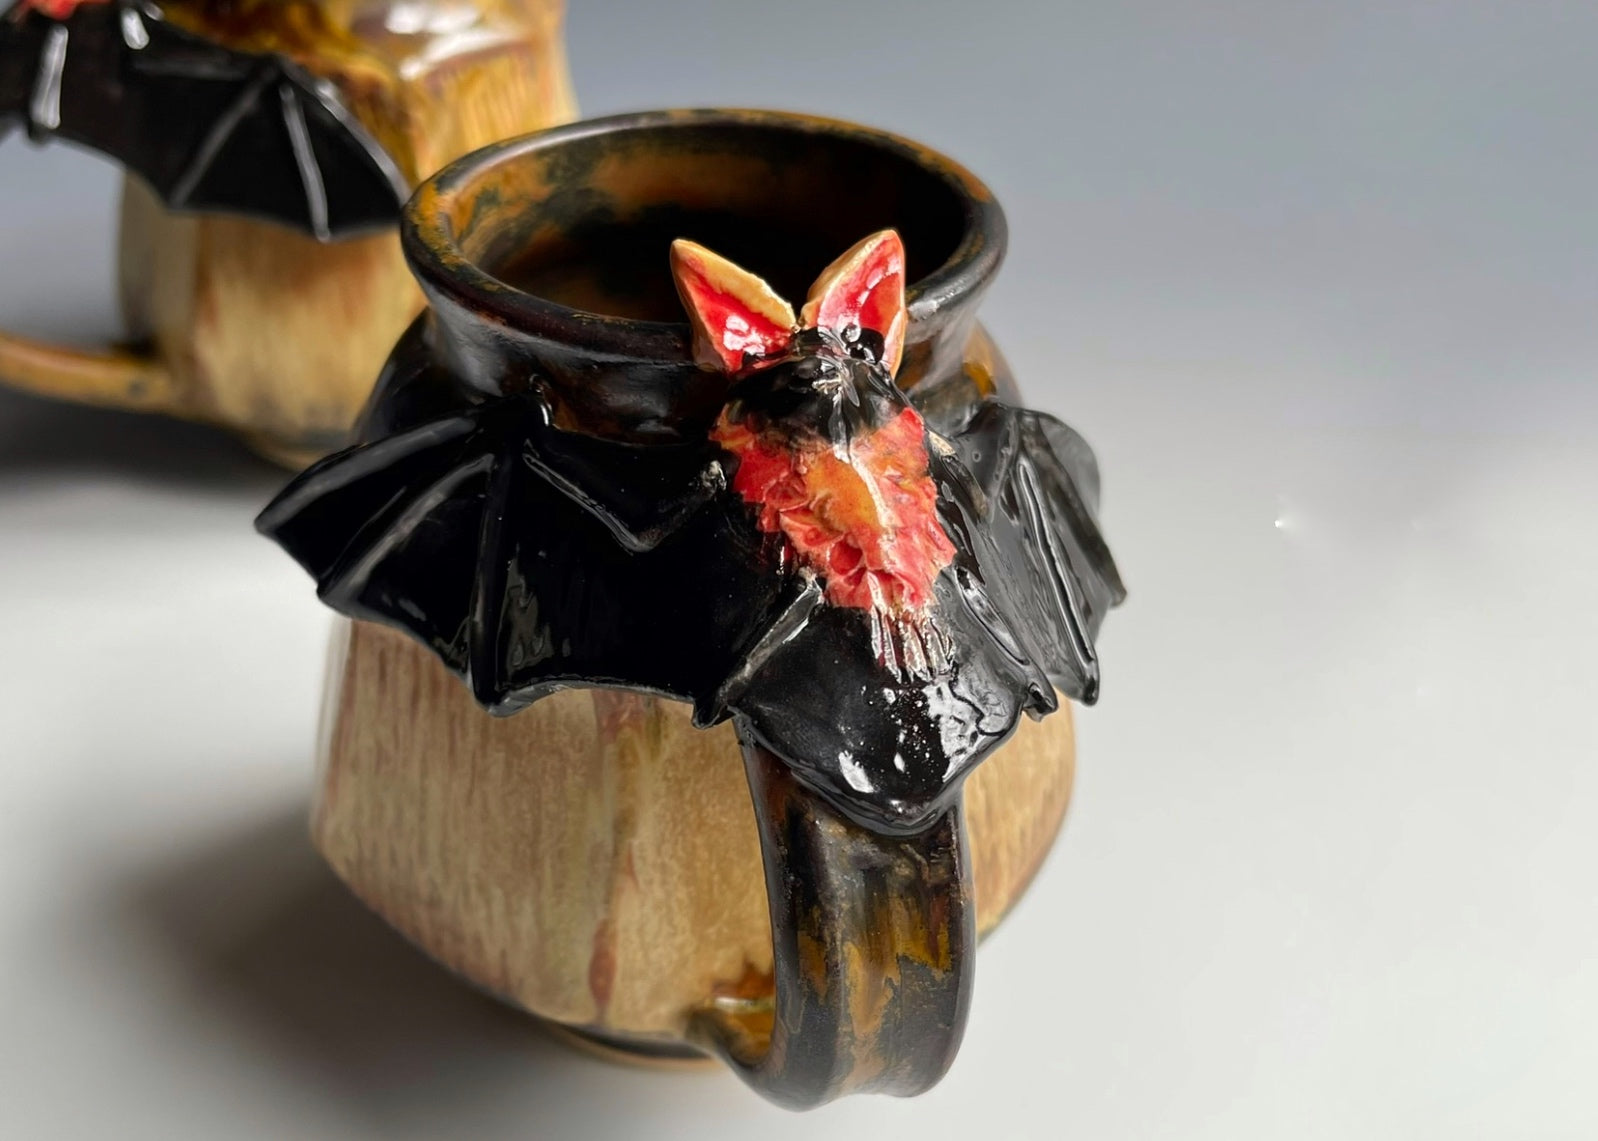 The Story Behind My Ceramic Bat Mug